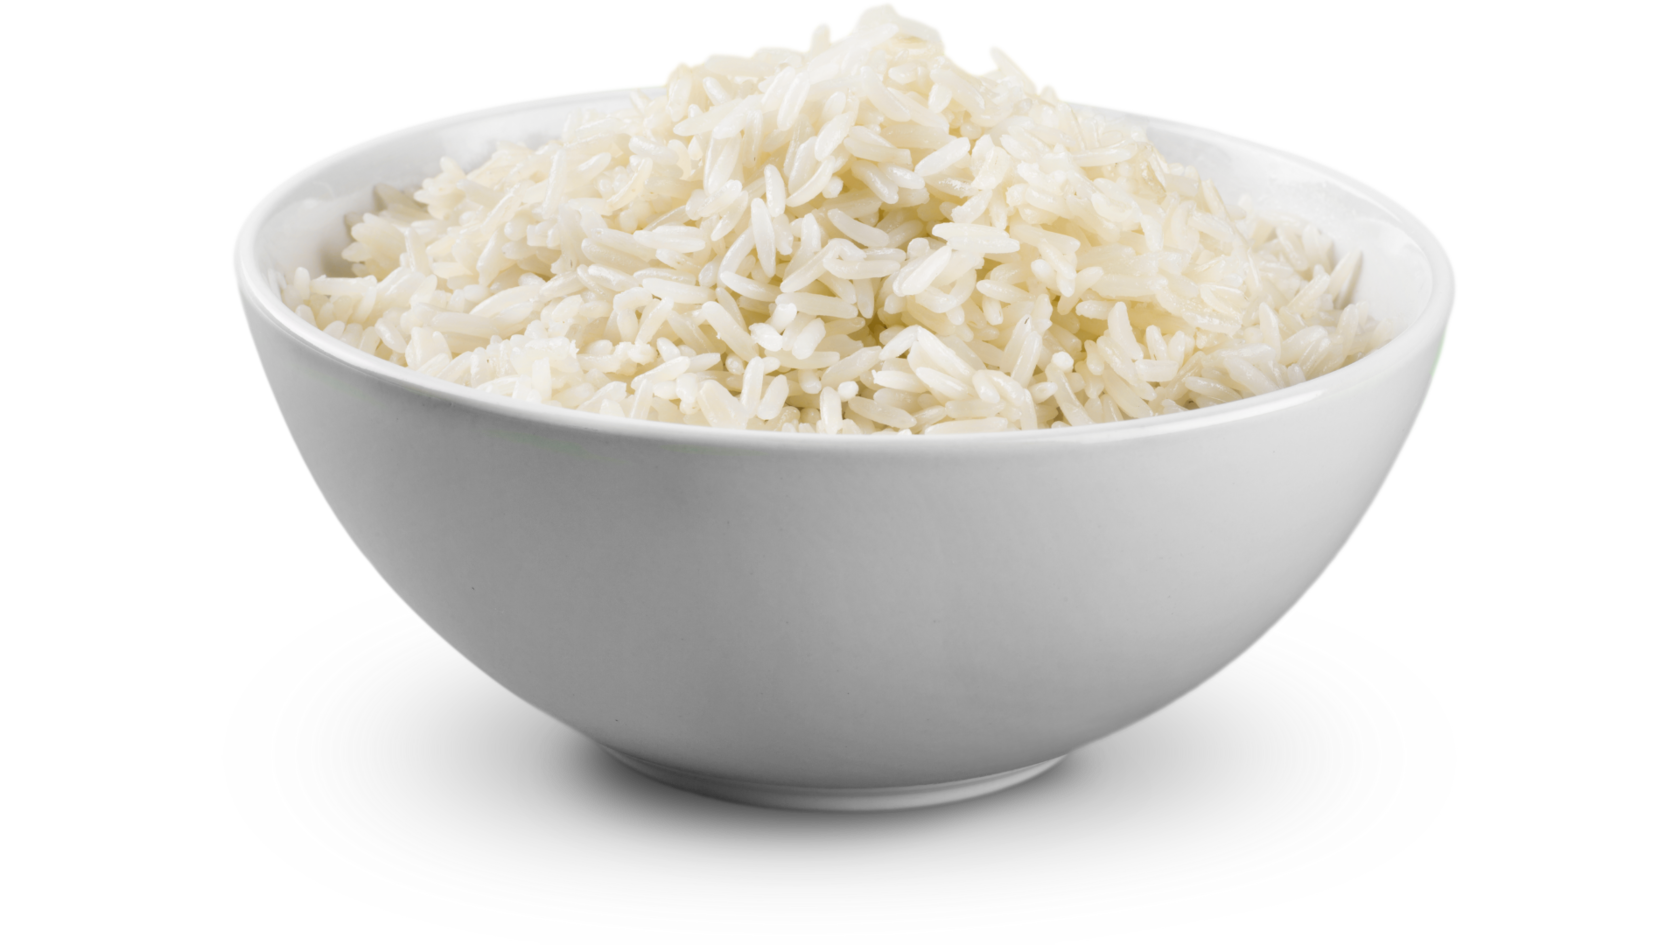 Ии рис. Рис Fatri. Миска риса. Рис на белом фоне. Рис в тарелке.